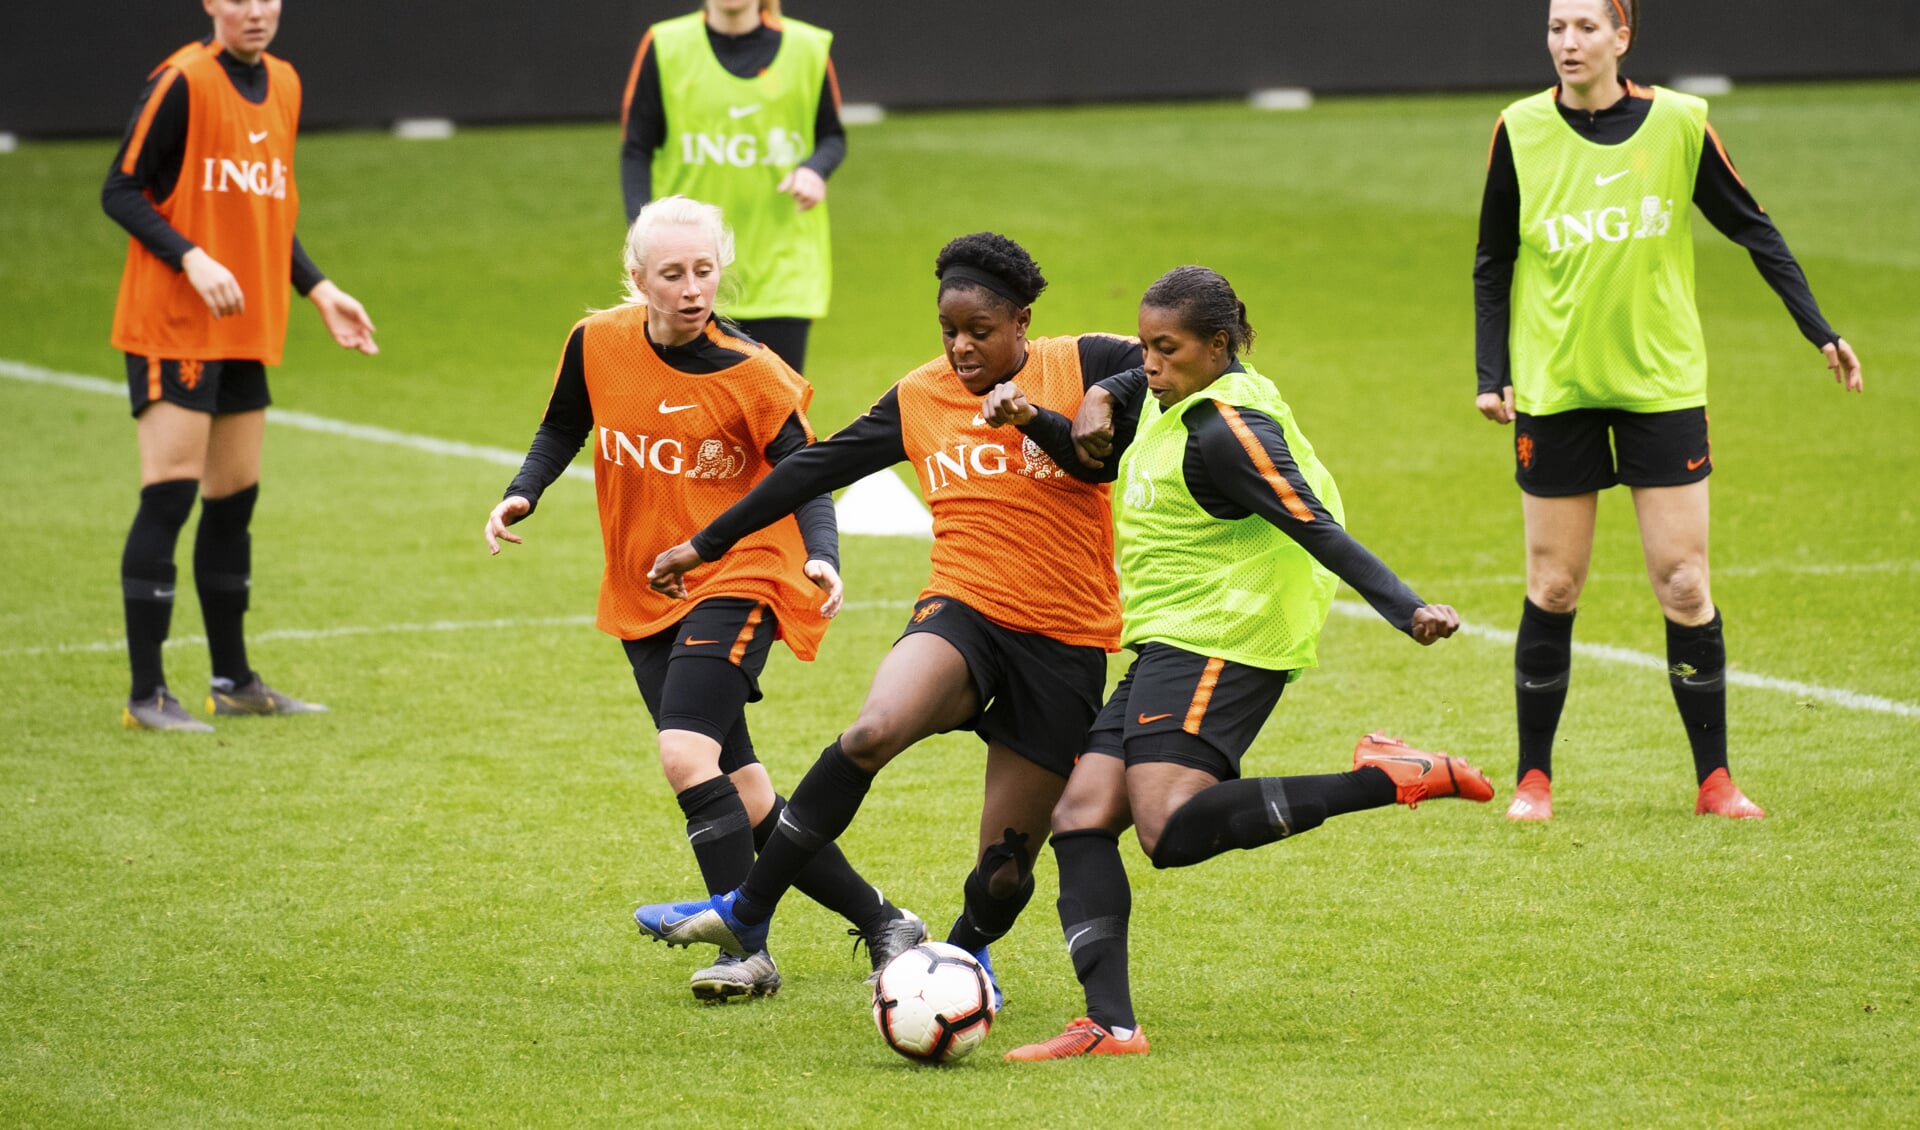 Training van de Oranjedames voor een WK-kwalificatiewedstrijd.